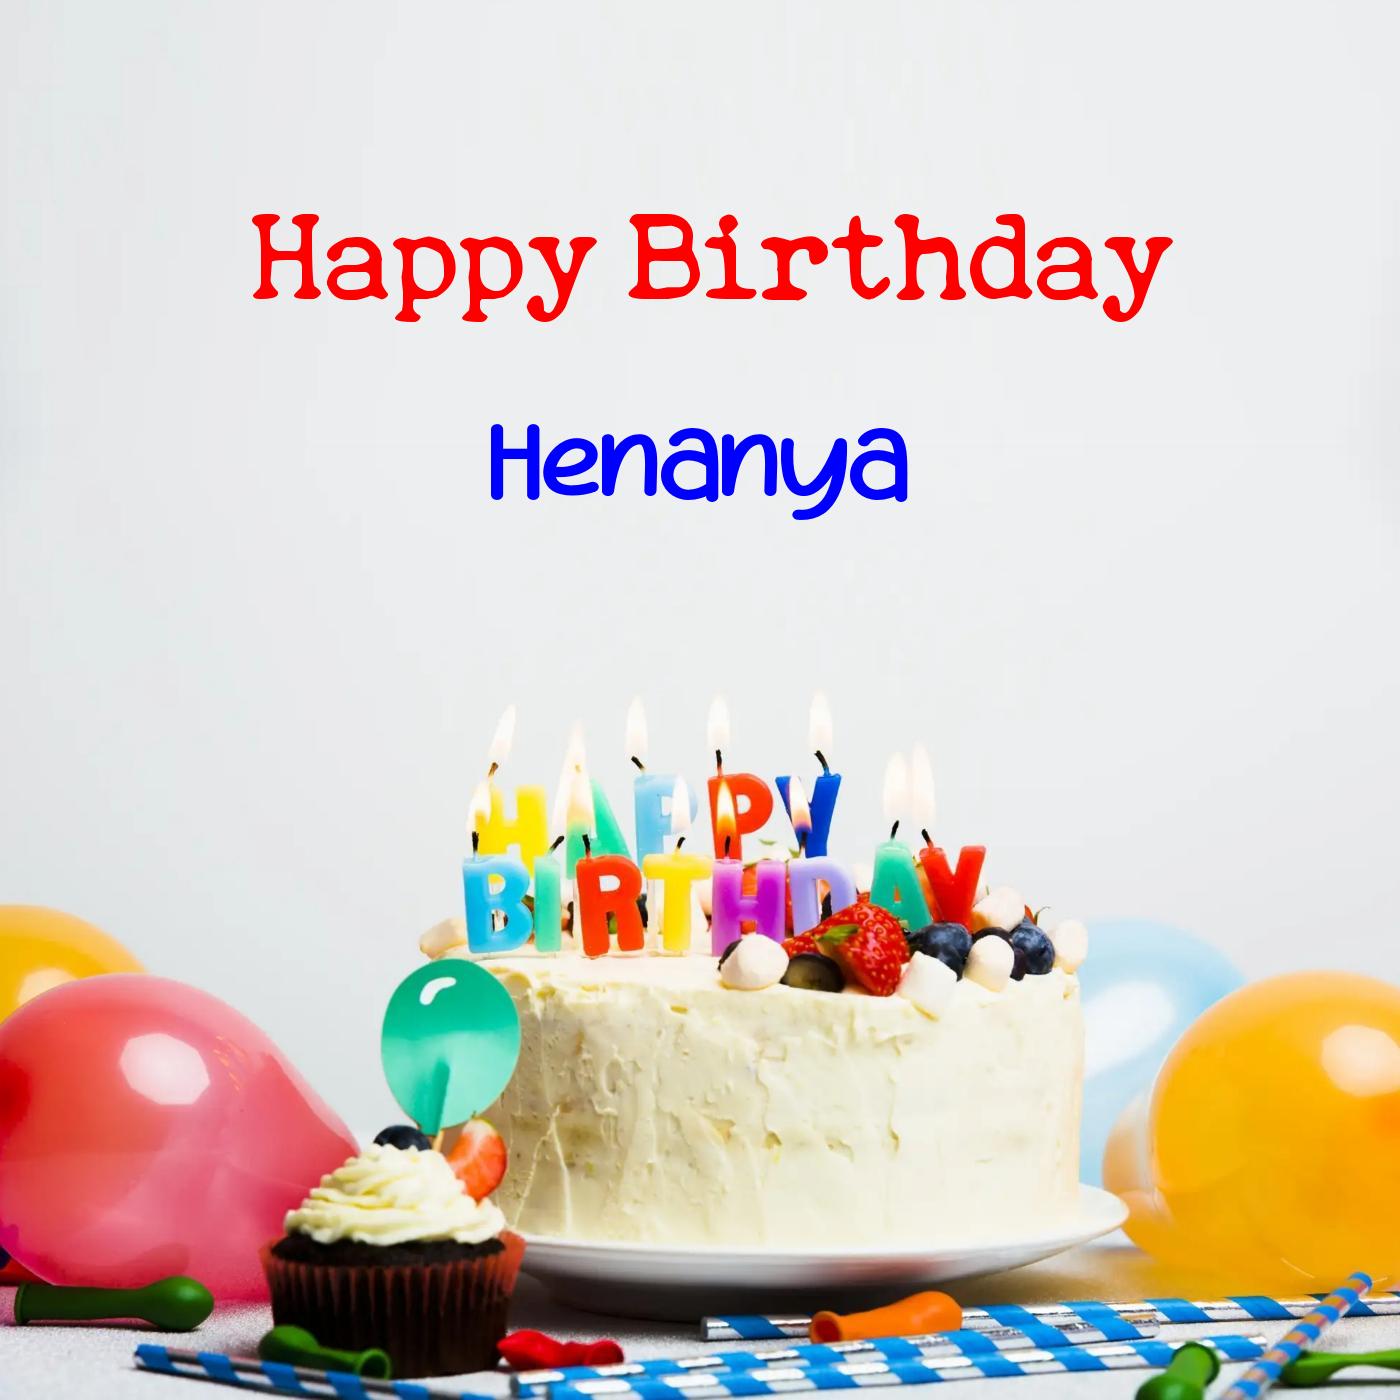 Happy Birthday Henanya Cake Balloons Card